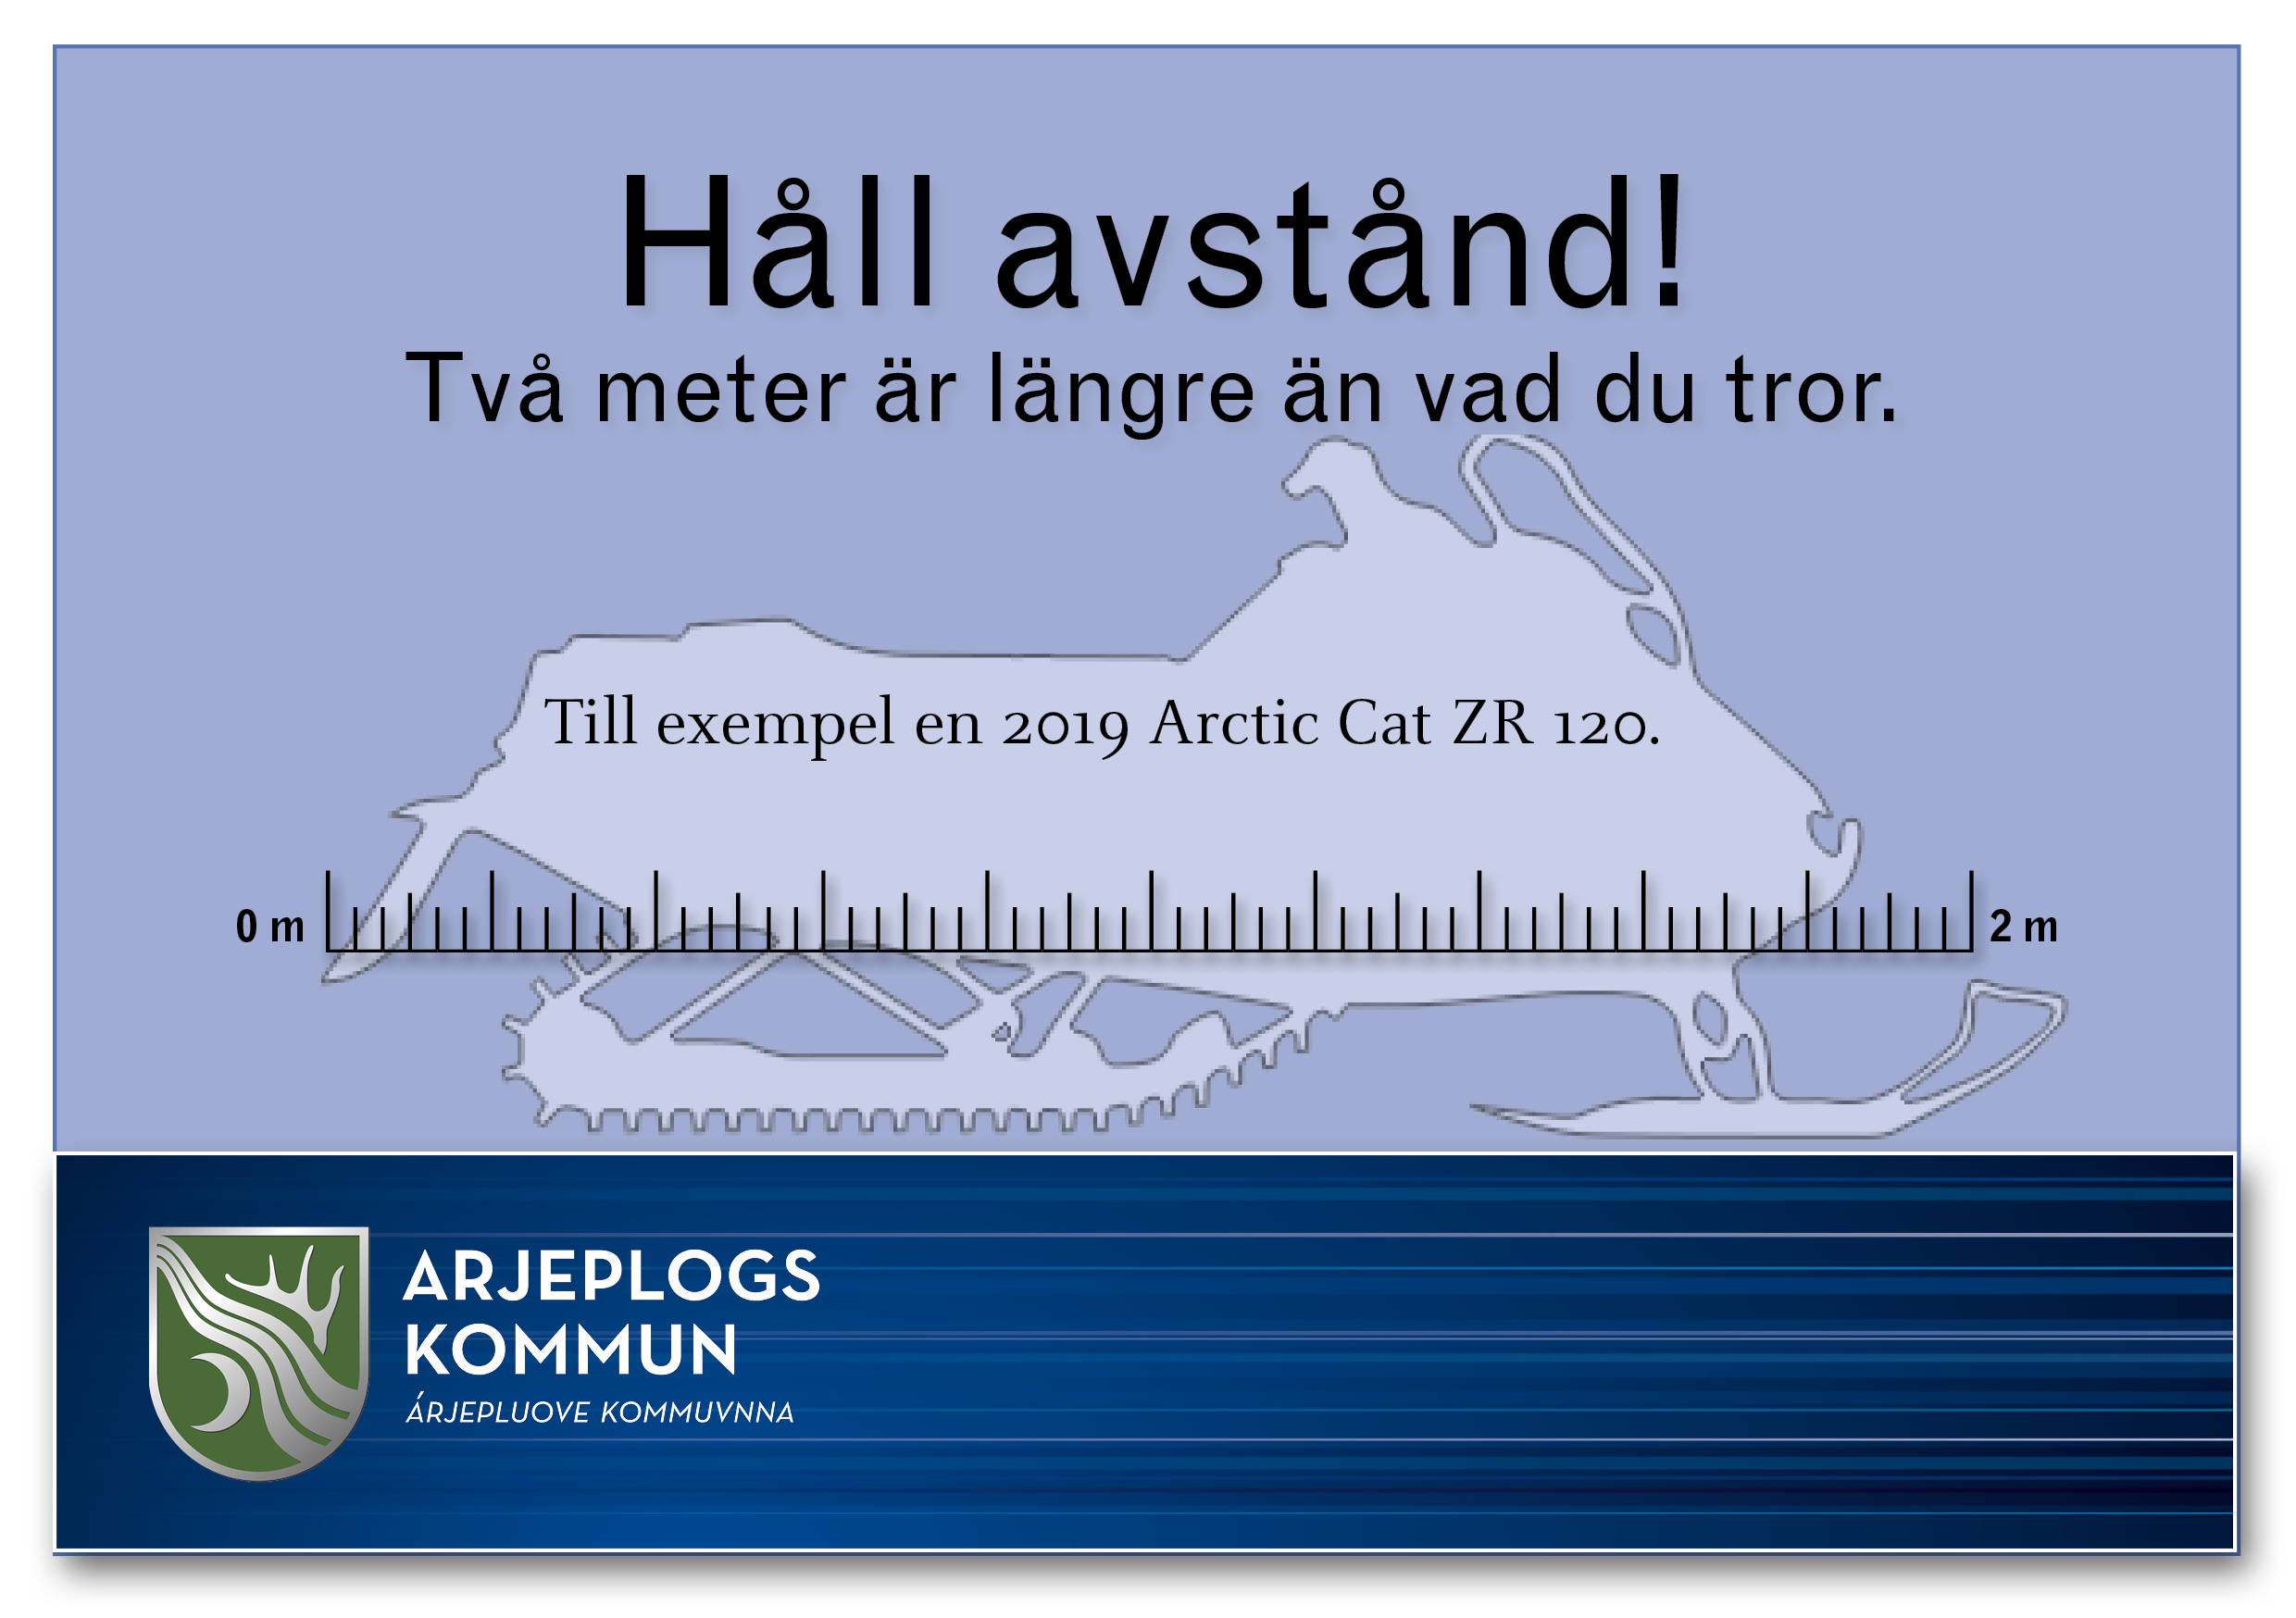 En bild som visar att längden på en Arctic Cat ZR 120 motsvarar två meter.